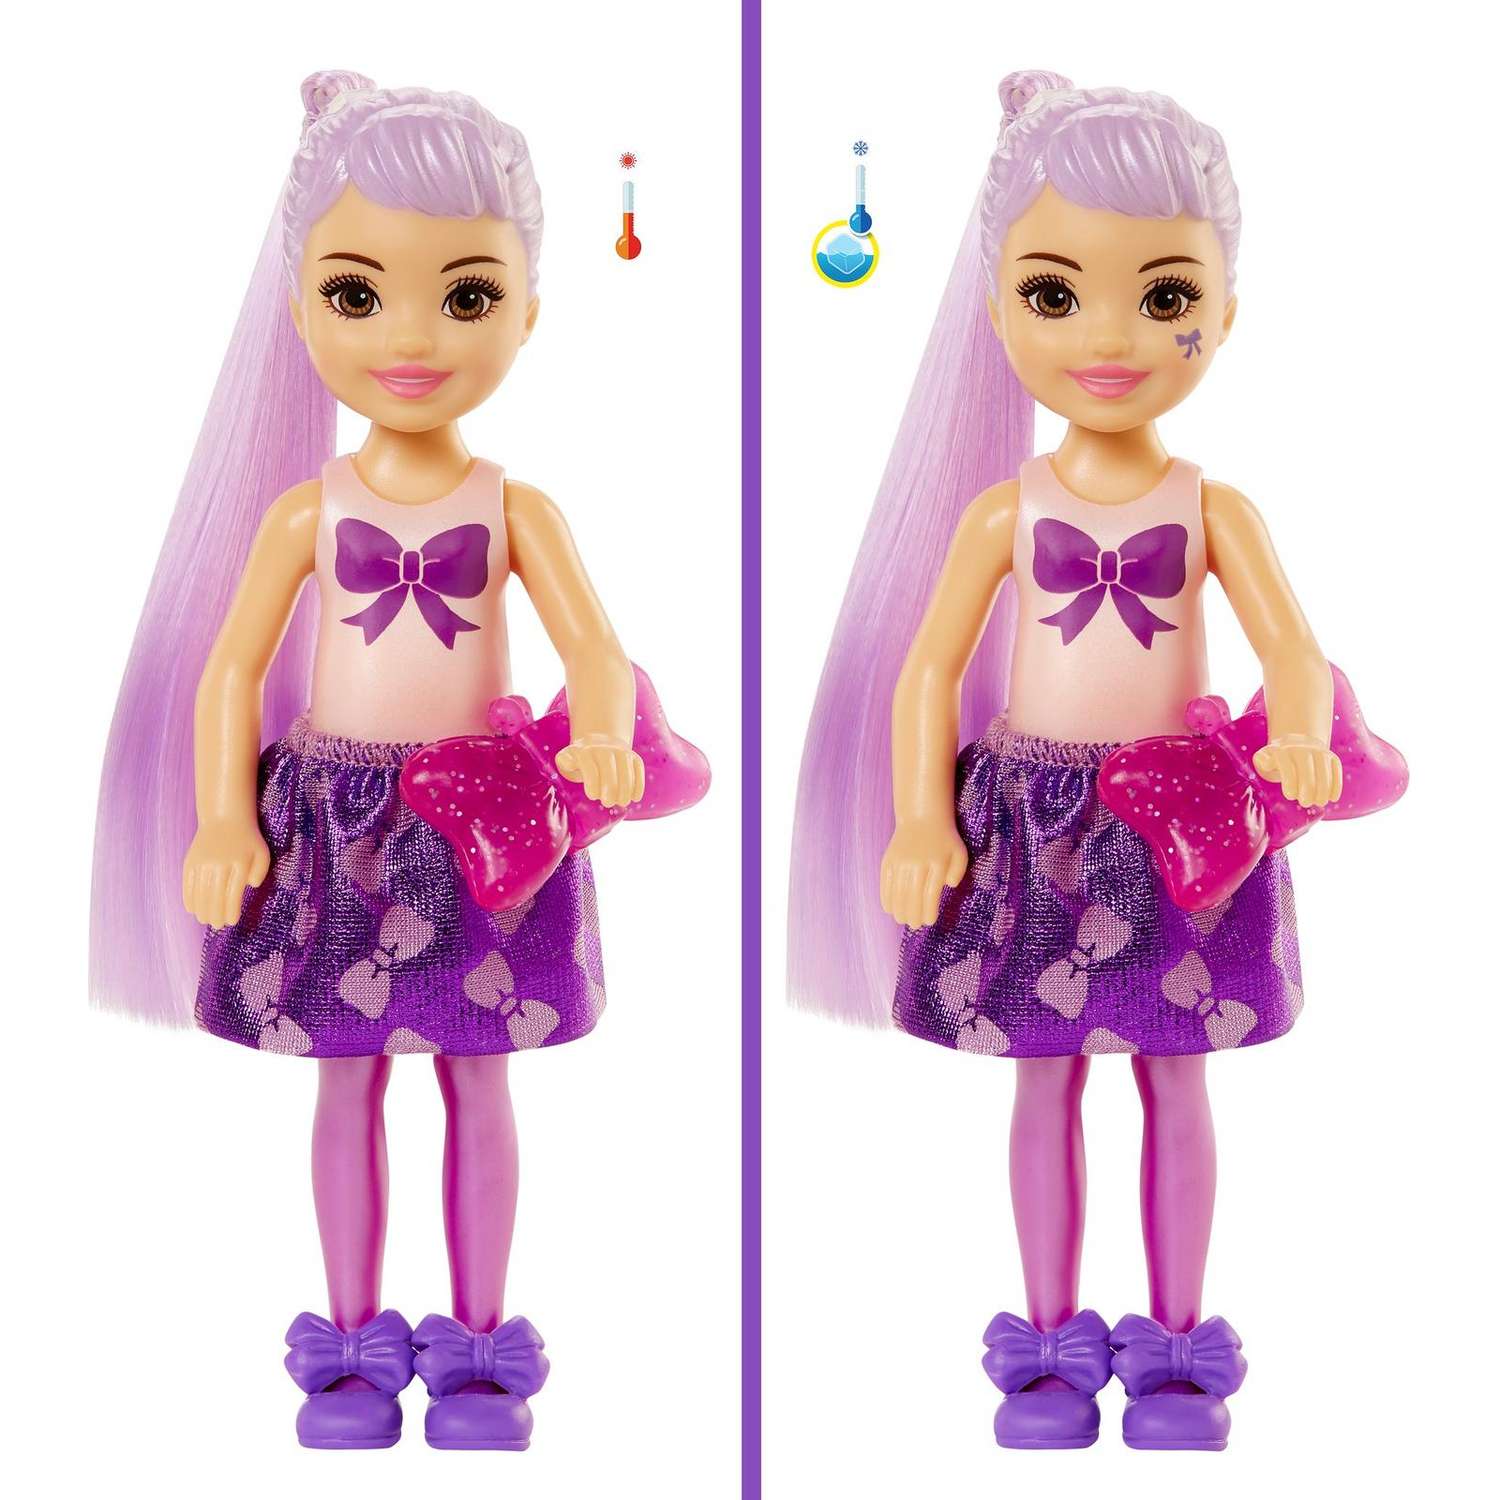 Набор Barbie Челси В1 кукла +аксессуары в непрозрачной упаковке (Сюрприз) GWC59 GTT23 - фото 5